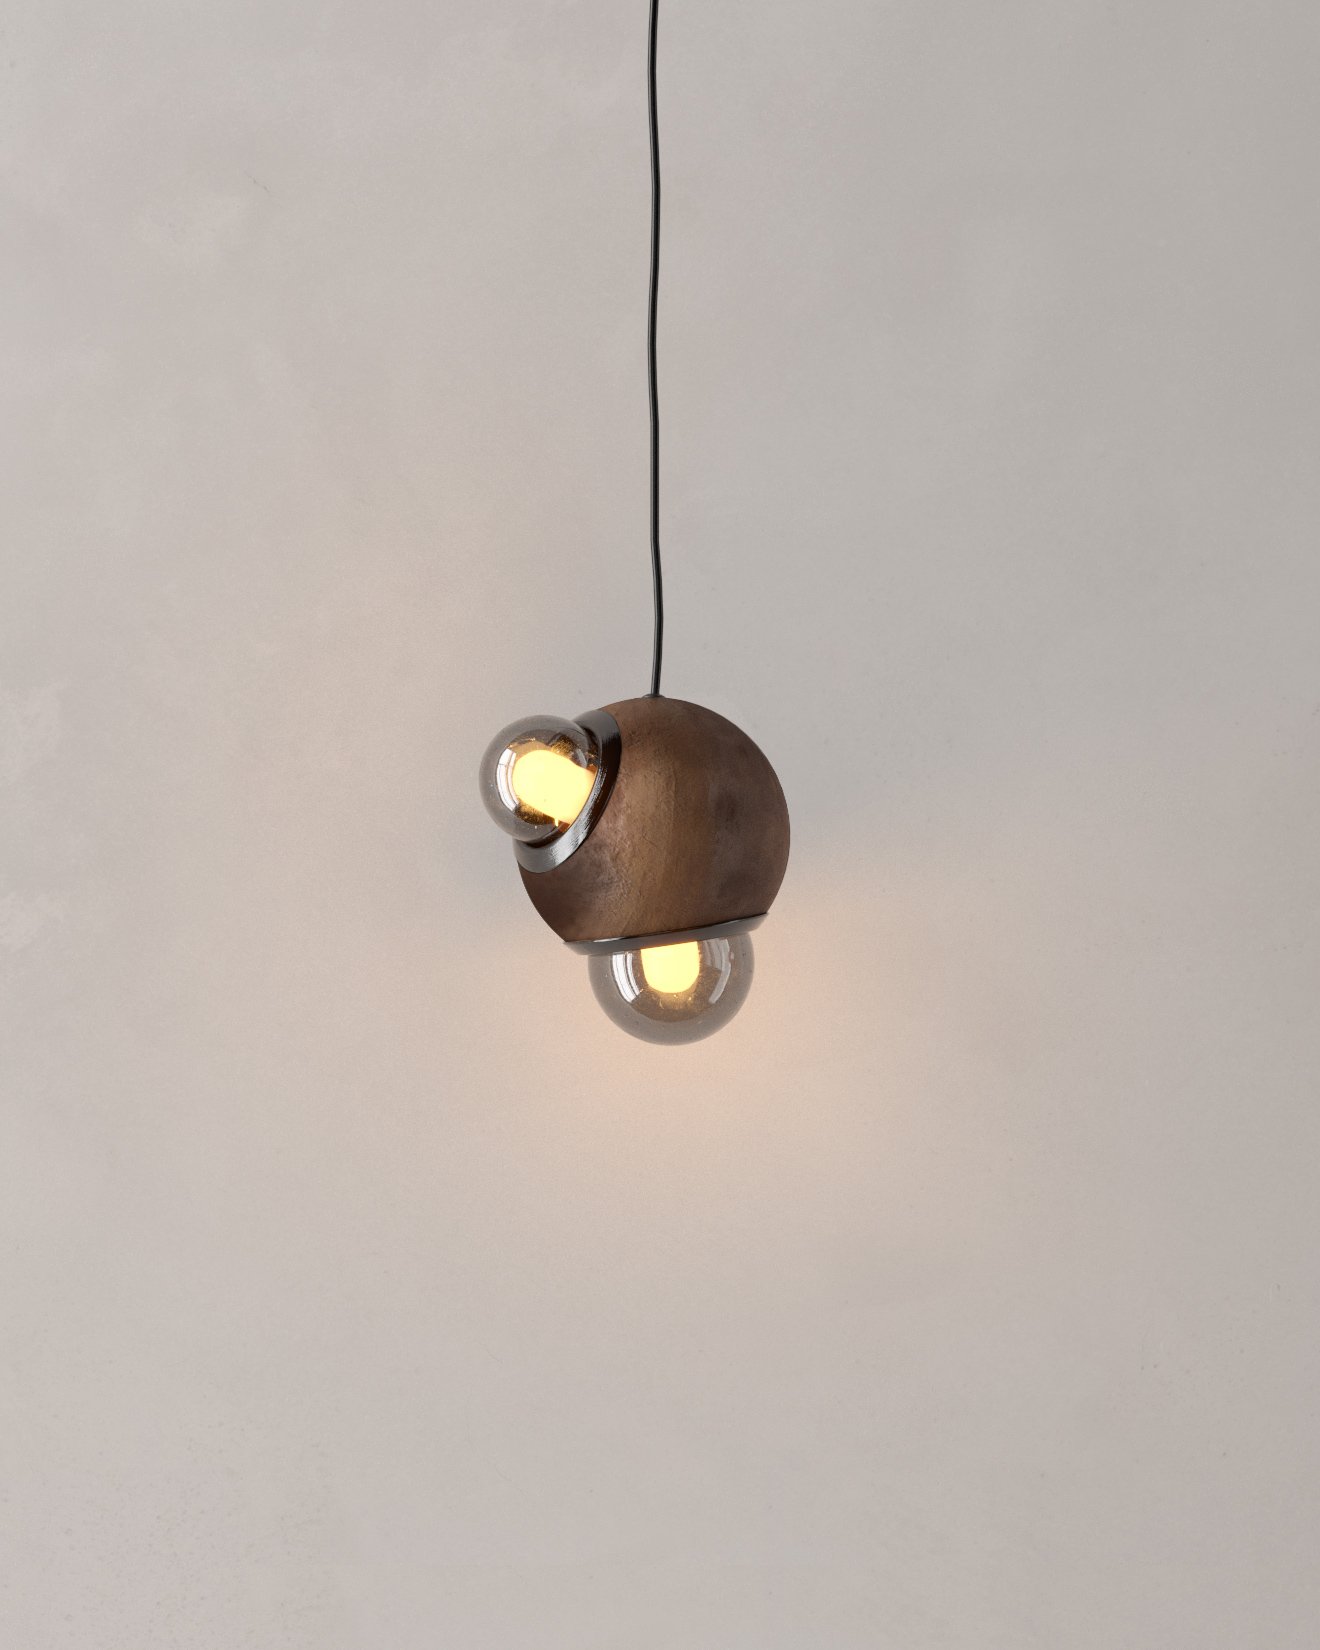 Lámpara colgante HUMO 13 color barro moteado con difusores de vidrio ahumado y detalle de aluminio anodizado color negro diseñada por Bandido Studio